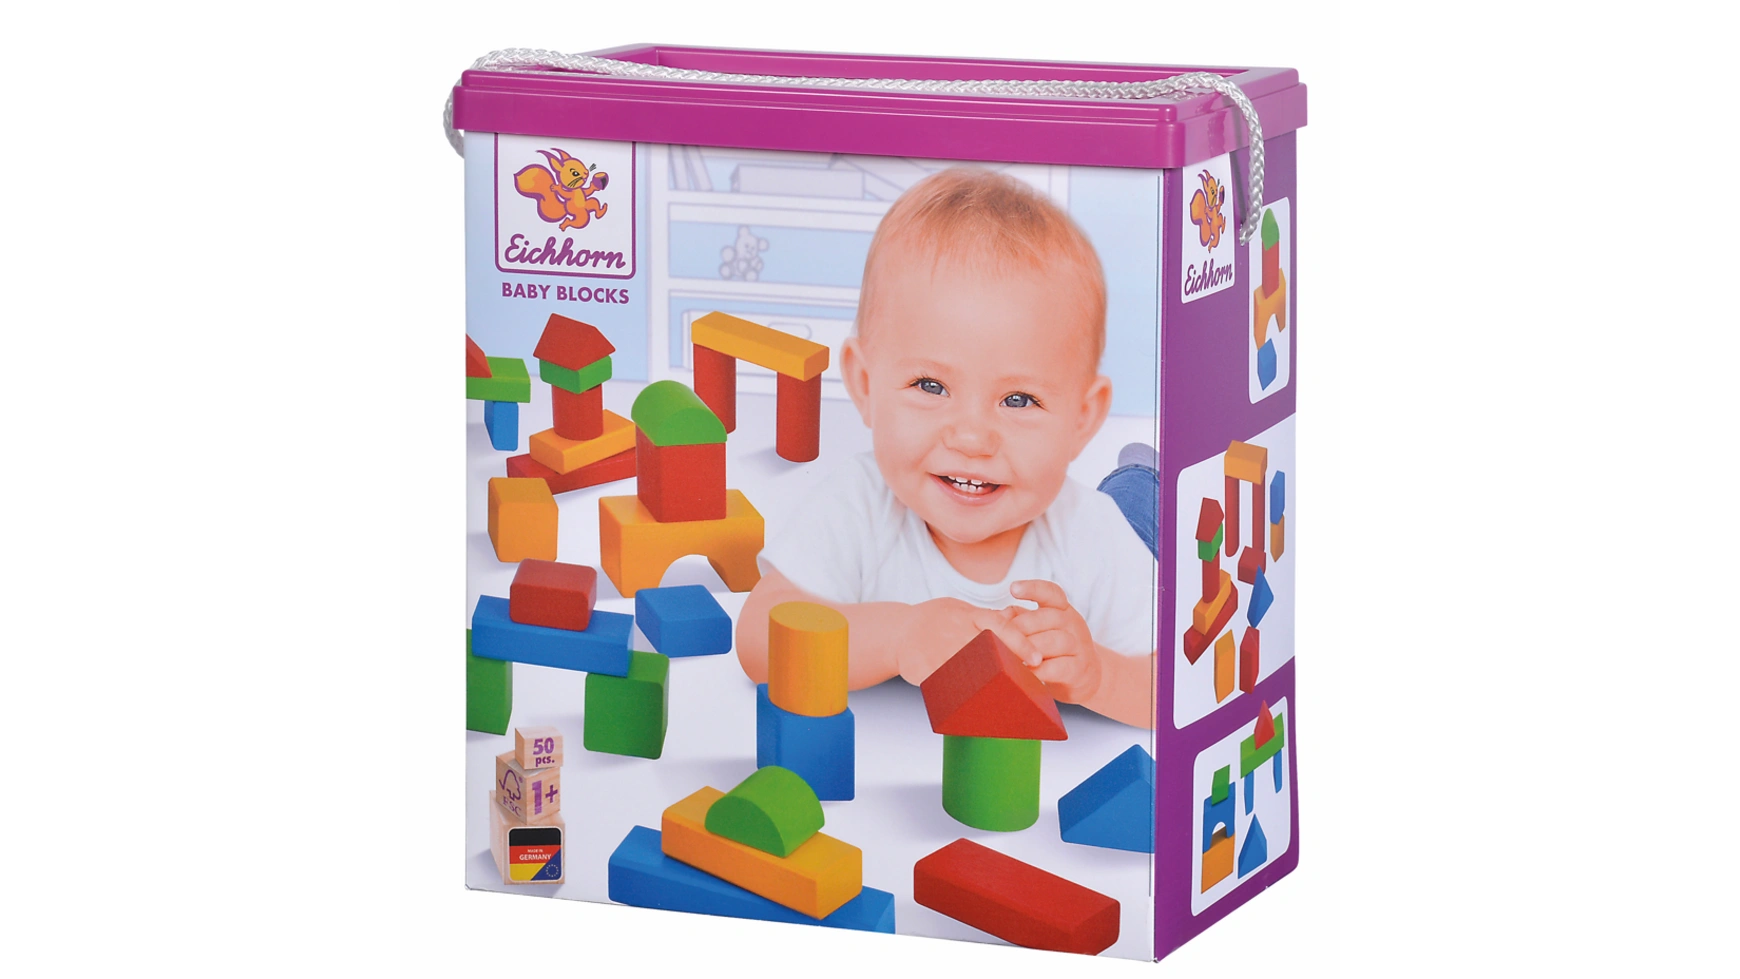 Eichhorn Красочные деревянные кубики для малышей, в комплекте: 50 штук 61 шт учебные пособия математические строительные блоки для учеников детские деревянные манипуляторы для детей